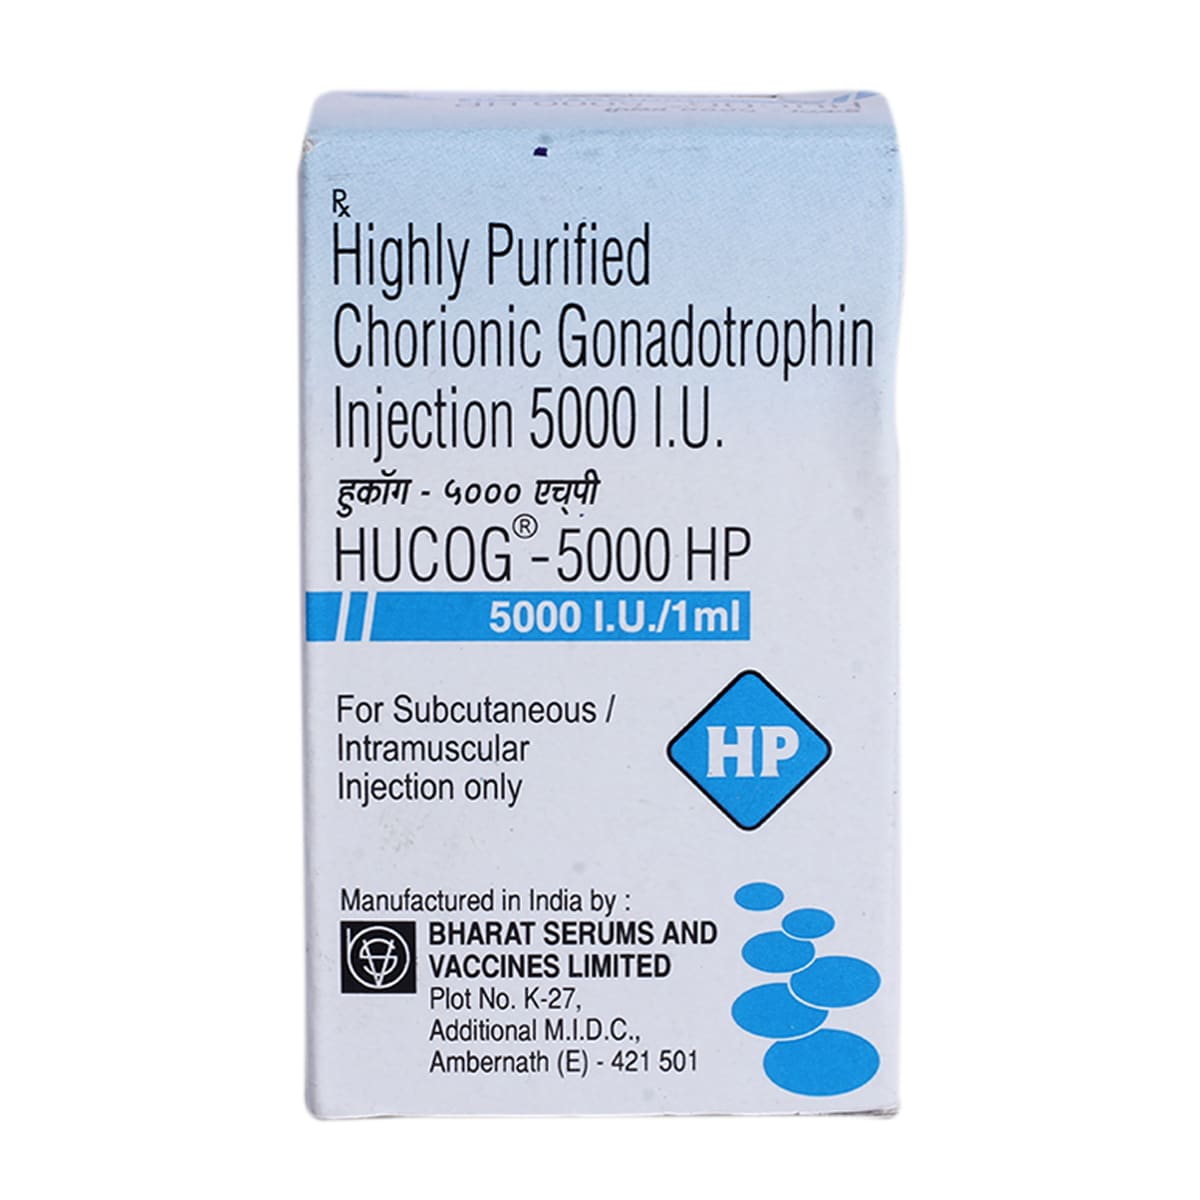 Buy Hucog-5000 HP Injection 1's Online